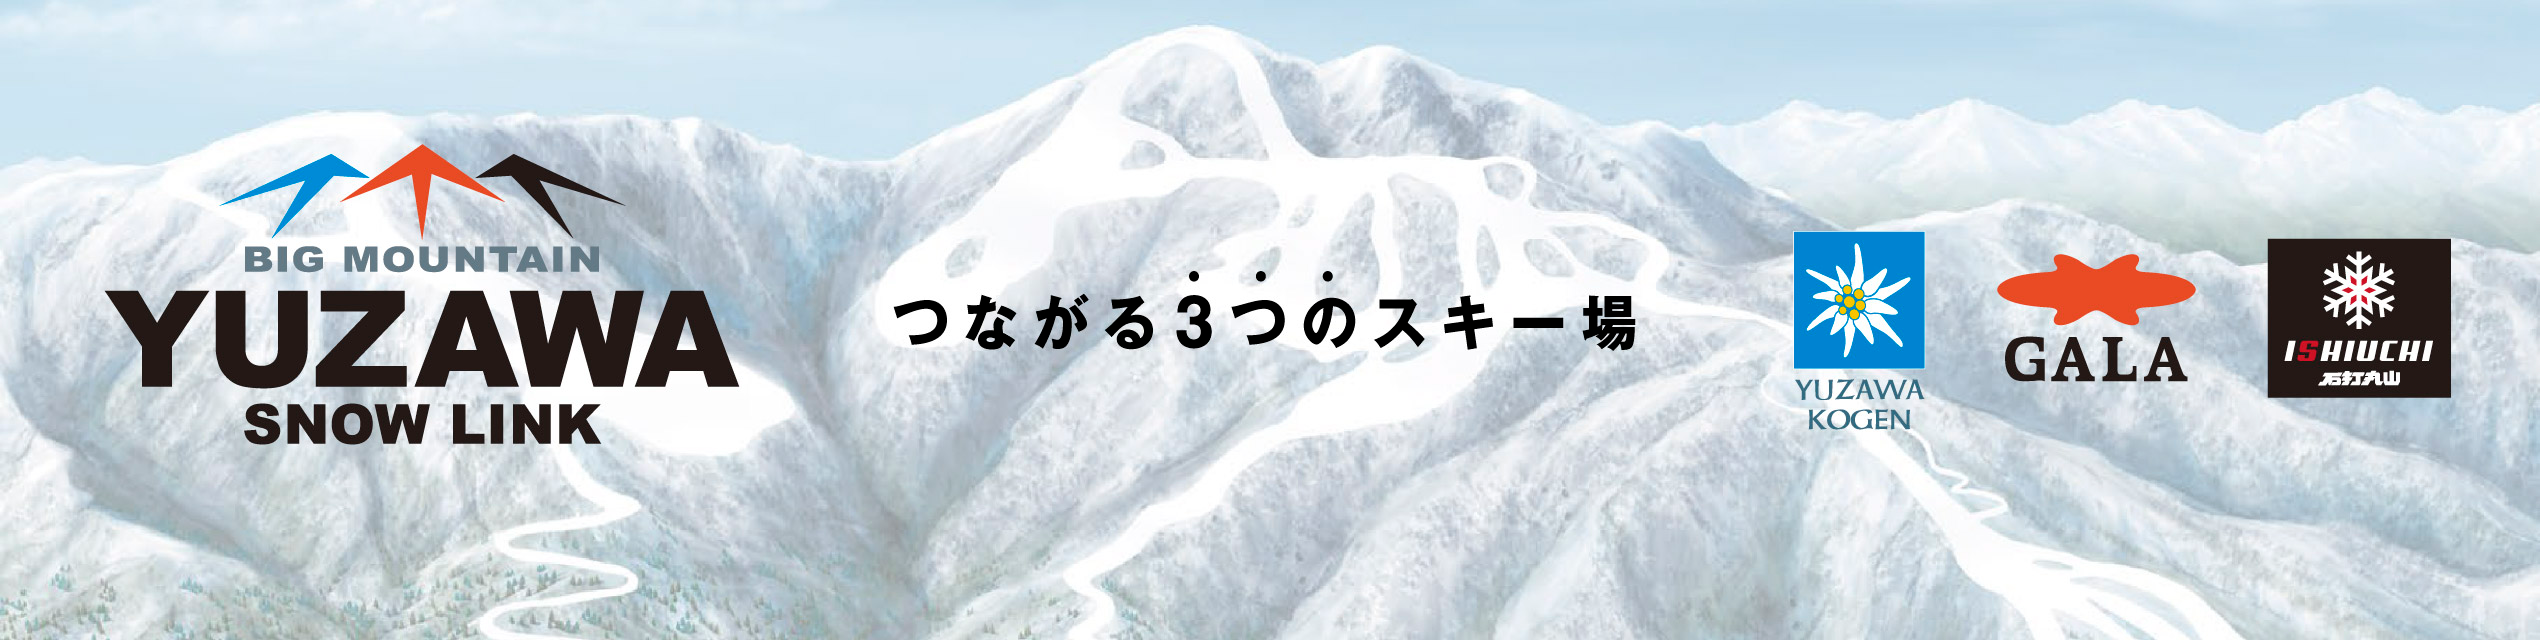 石打丸山スキー場【公式サイト】